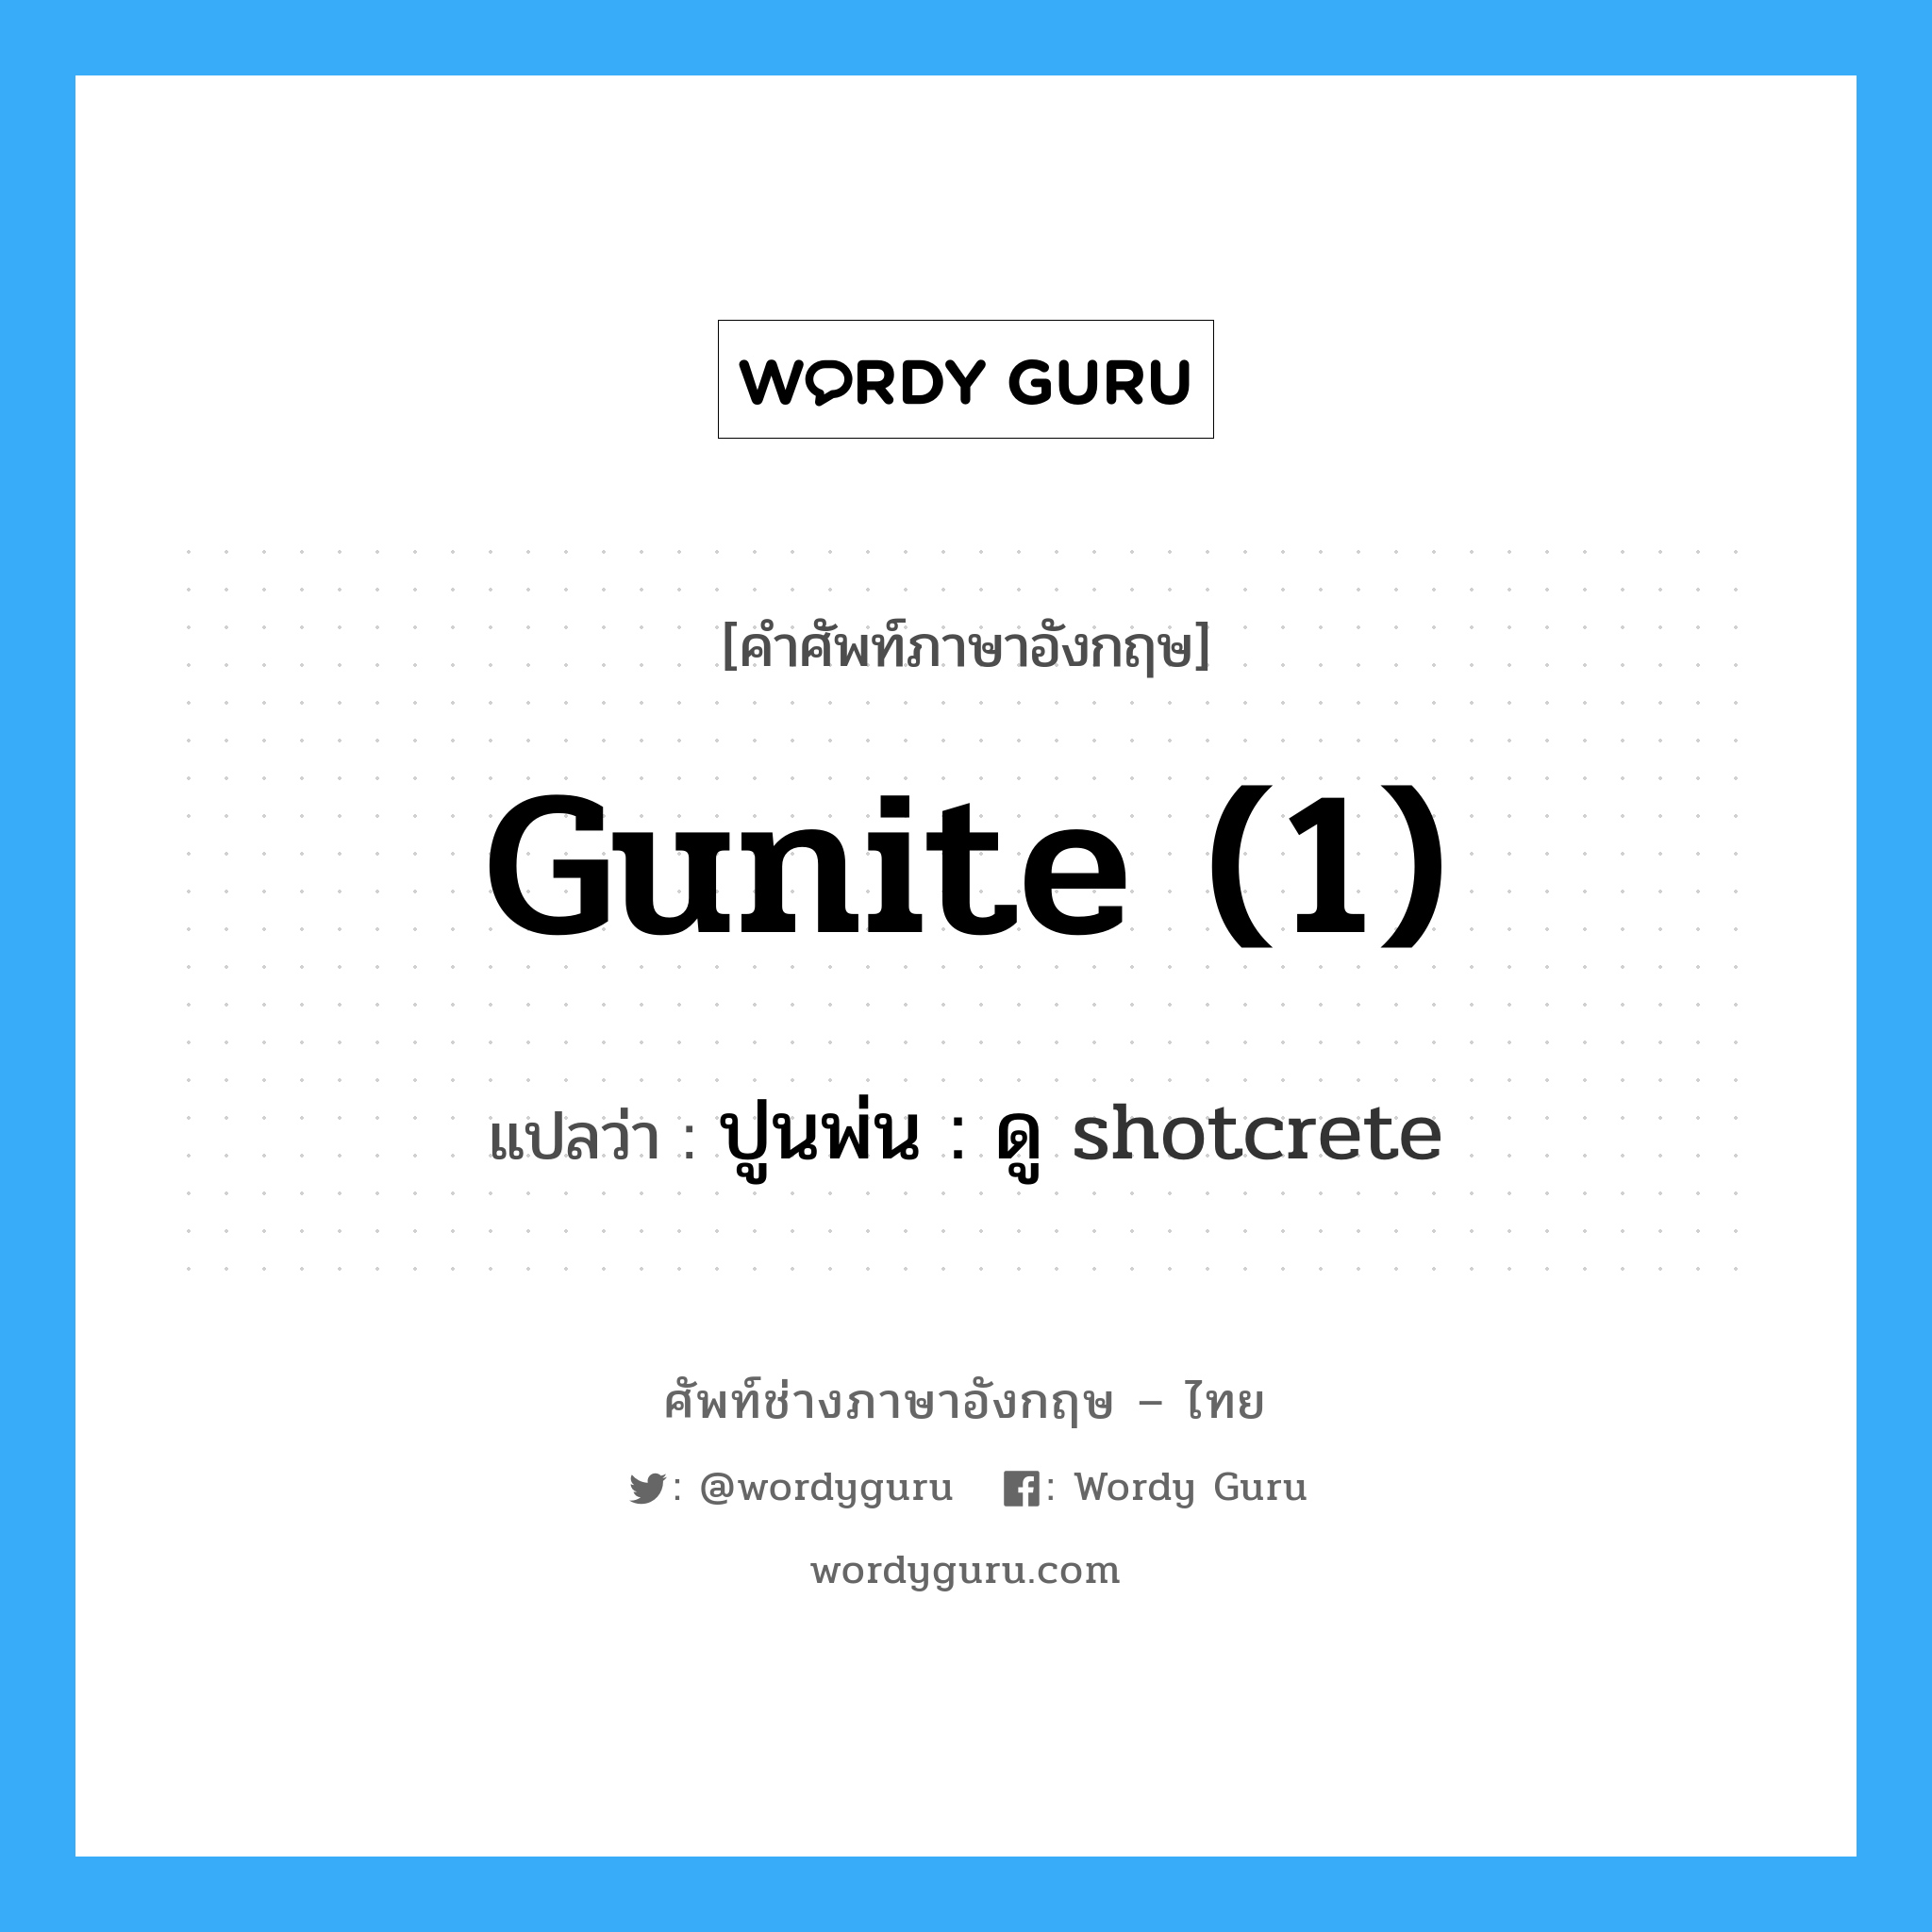 gunite (1) แปลว่า?, คำศัพท์ช่างภาษาอังกฤษ - ไทย gunite (1) คำศัพท์ภาษาอังกฤษ gunite (1) แปลว่า ปูนพ่น : ดู shotcrete